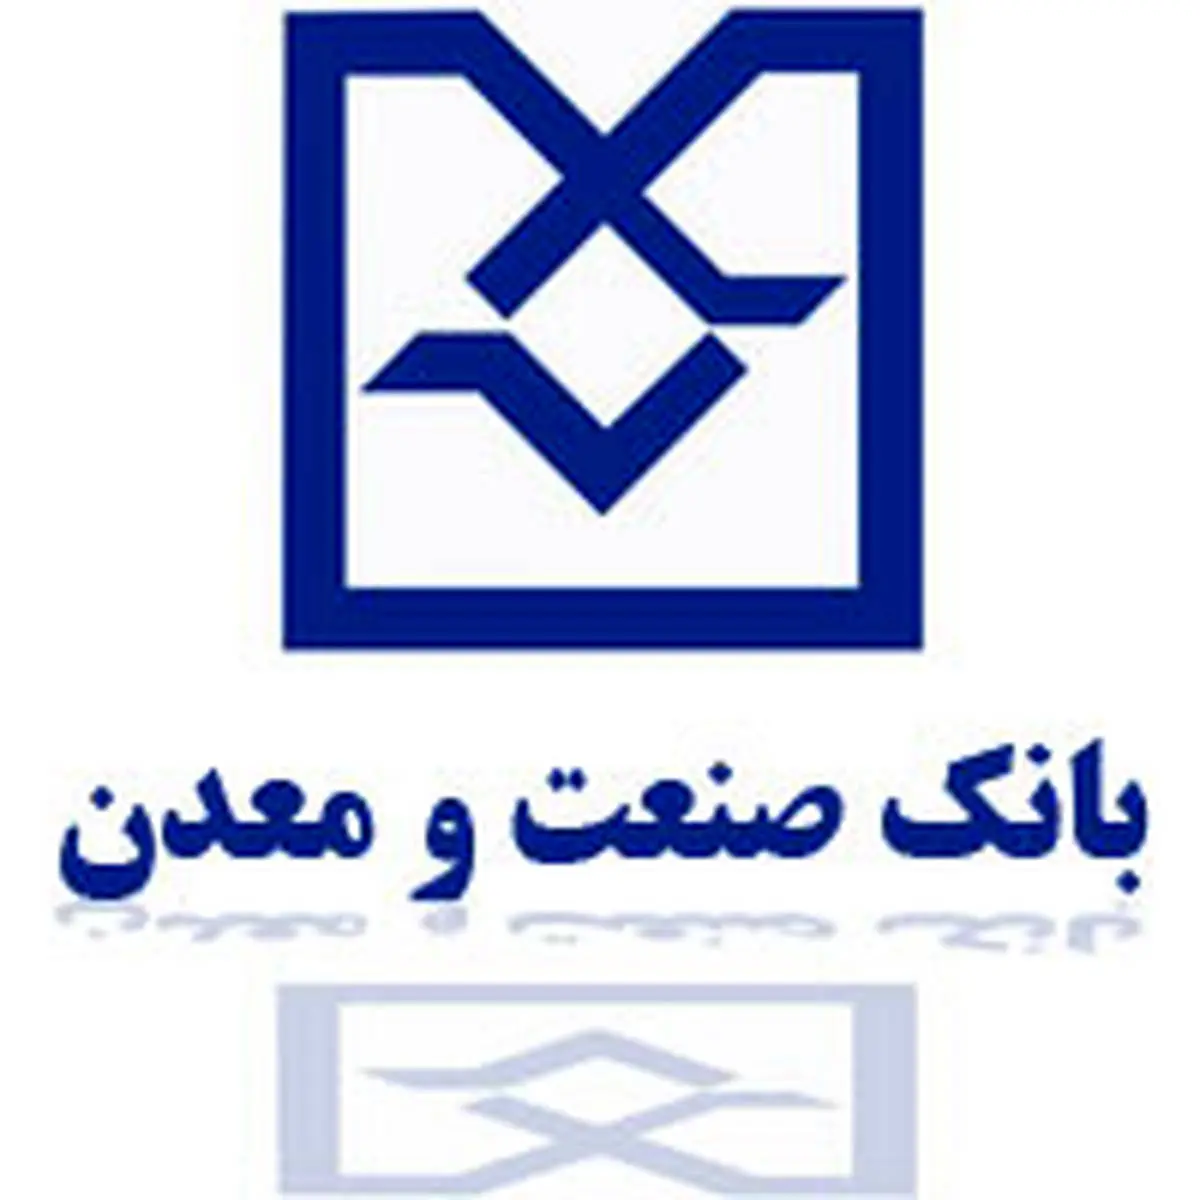 بانک صنعت و معدن تامین کننده مالی طرح لاستیک بارز کردستان